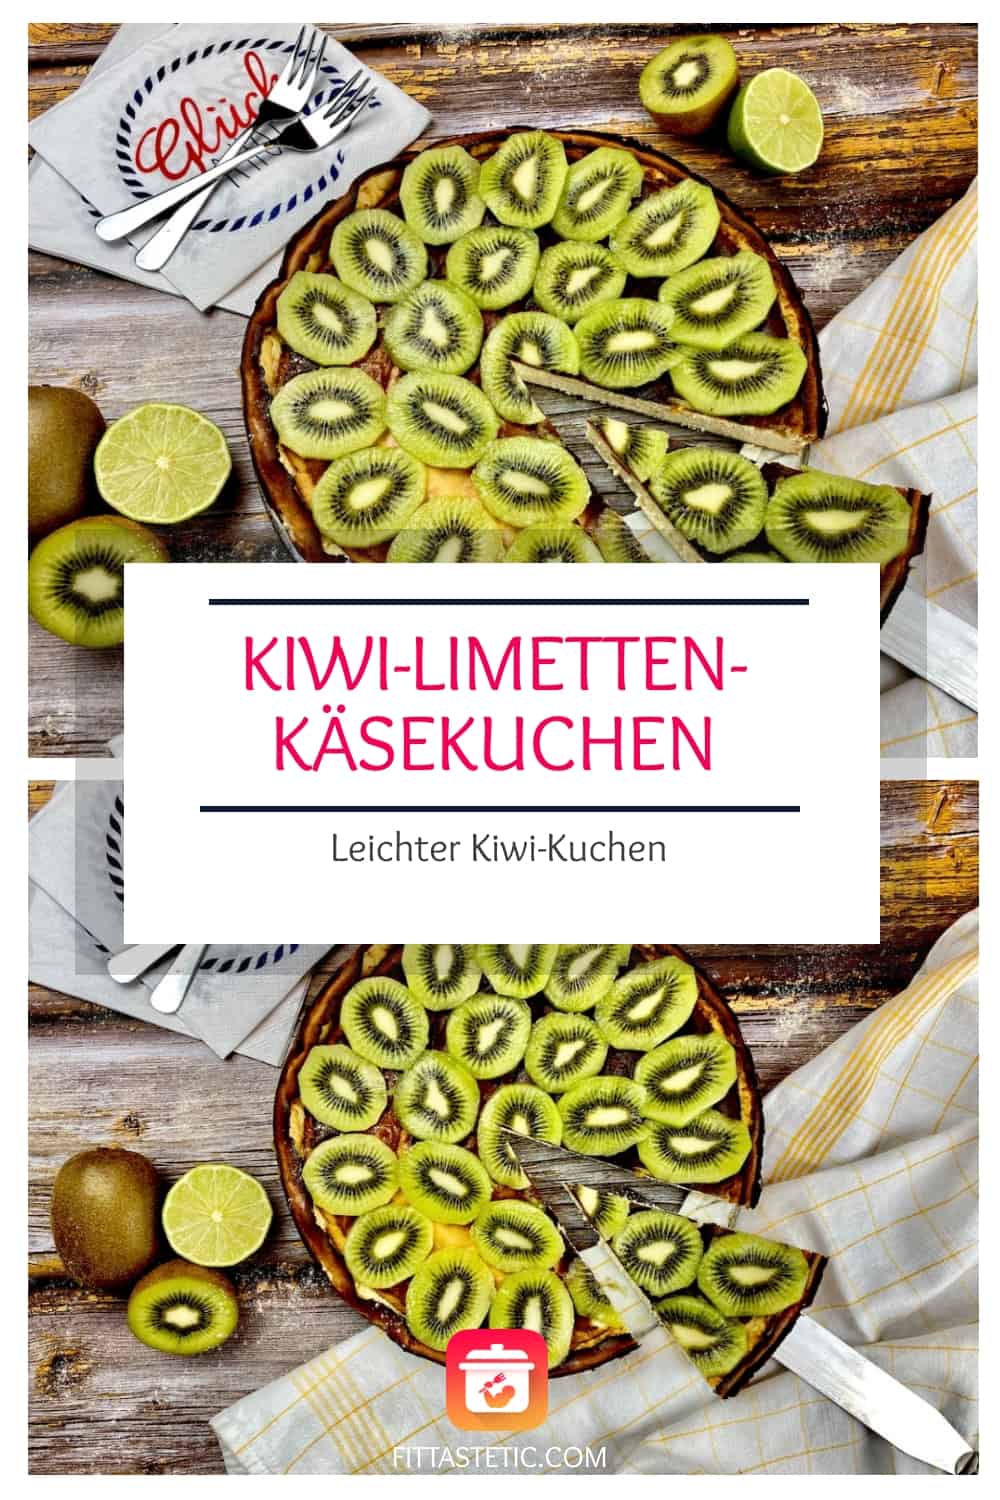 Kiwi-Limetten-Käsekuchen - Leichter Kiwi-Kuchen